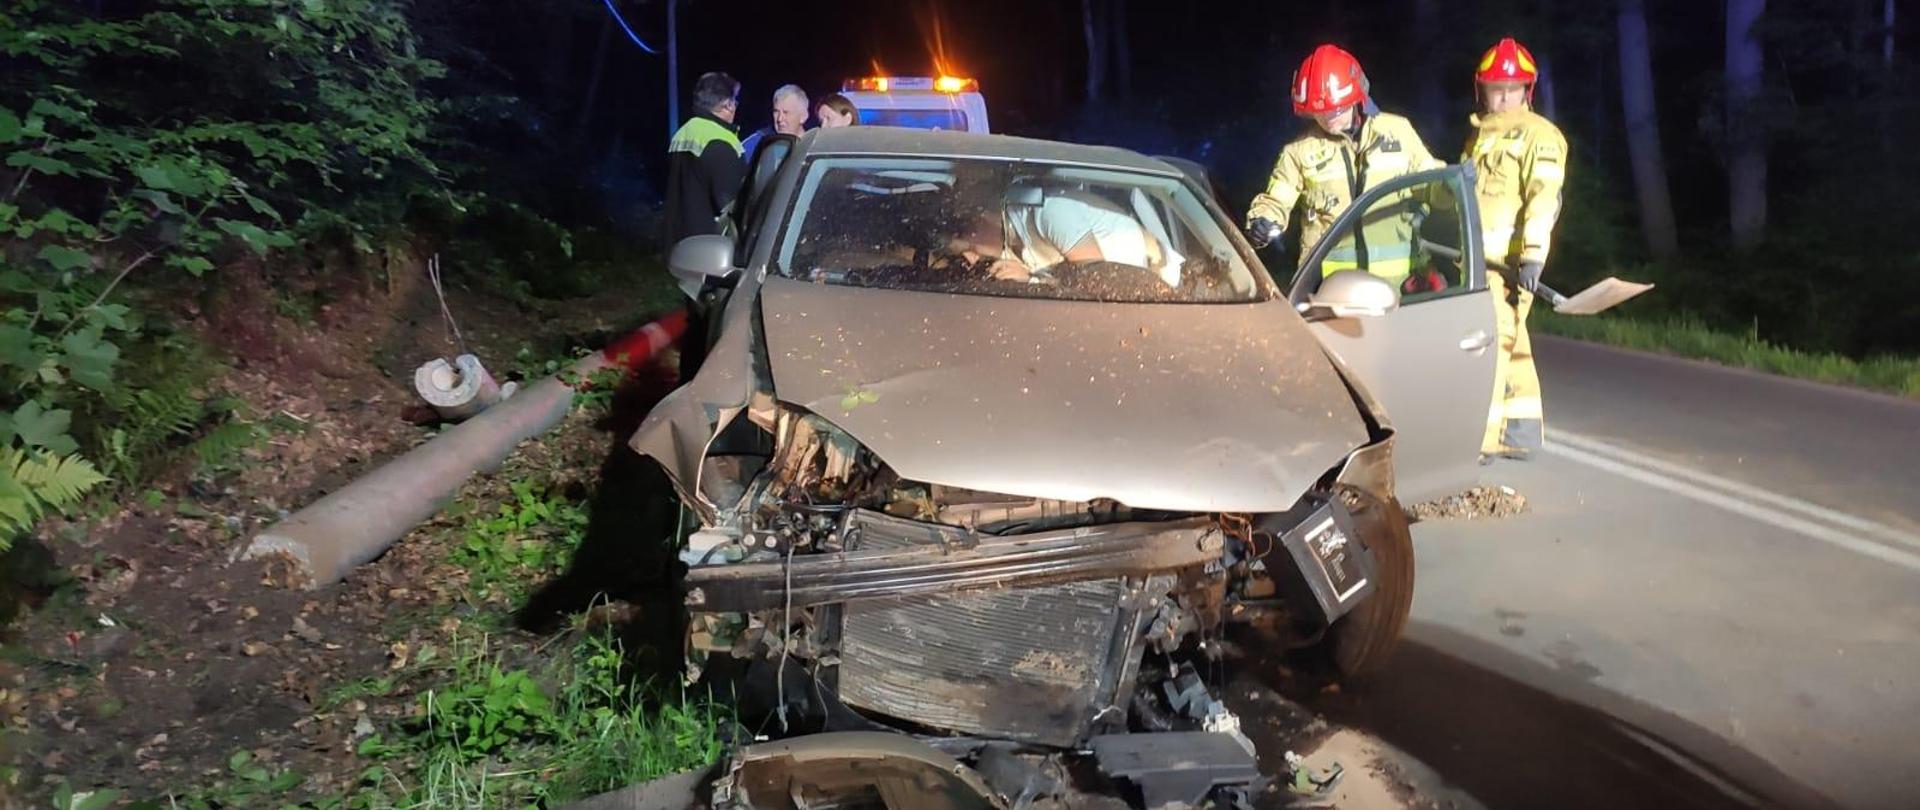 Samochód osobowy rozbity w wyniku wypadku drogowego, w tle strażacy oraz pozostałe służby oraz złamany słup elektryczny